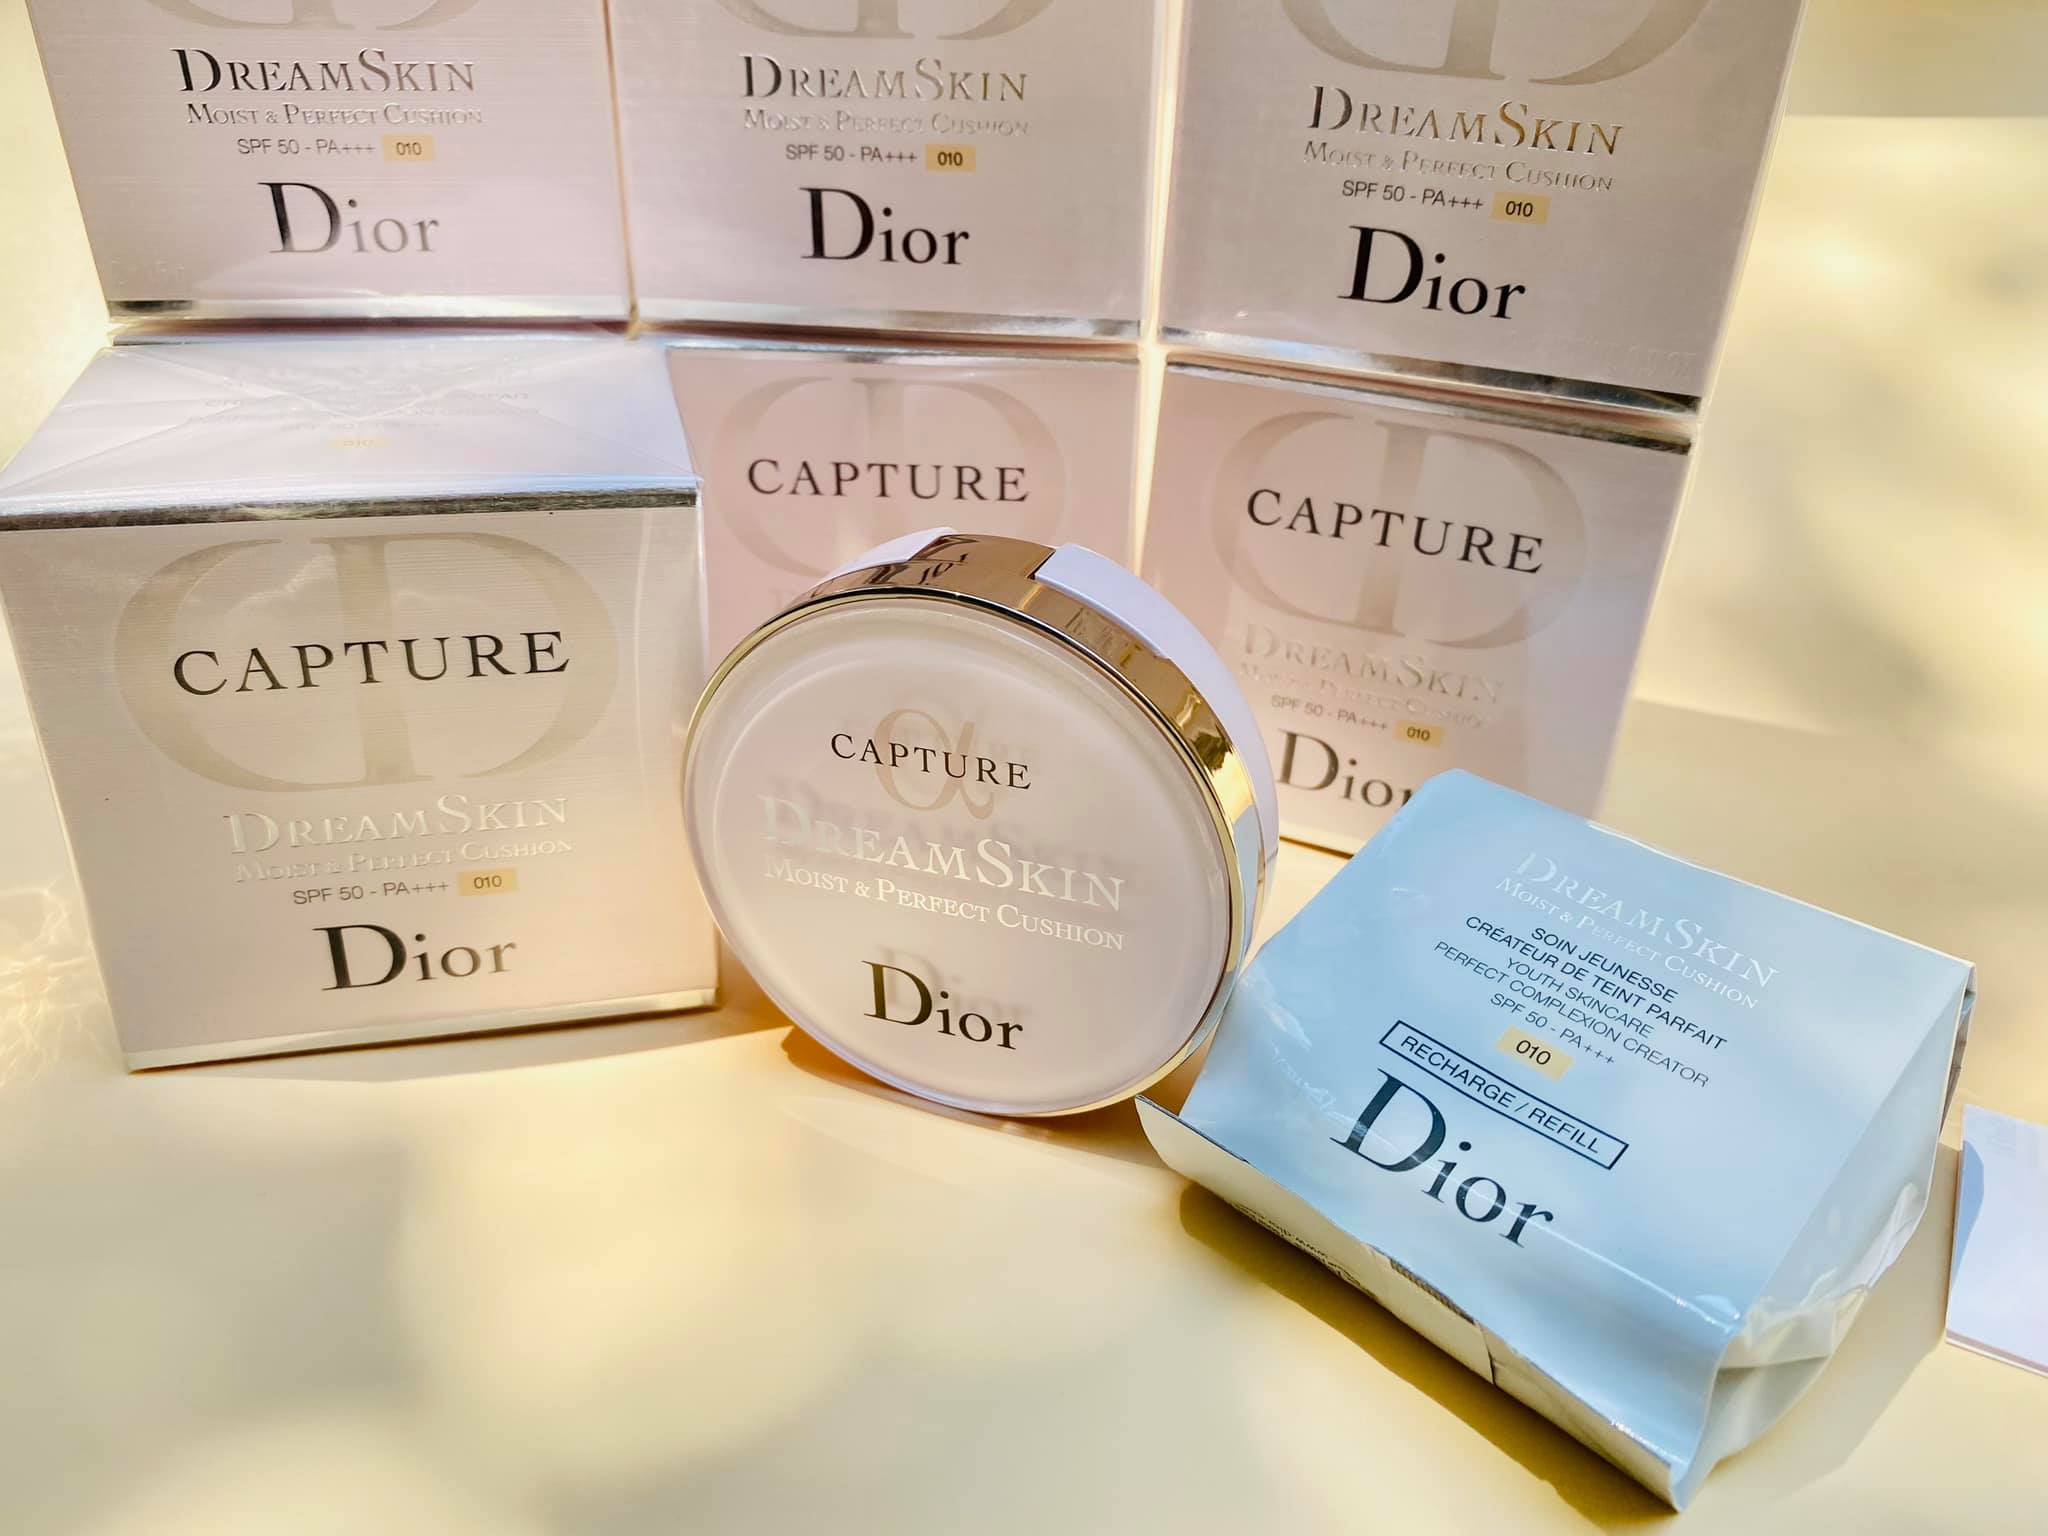 Phấn Nước Dior Capture Totale Dreamskin Perfect Skin Cushion